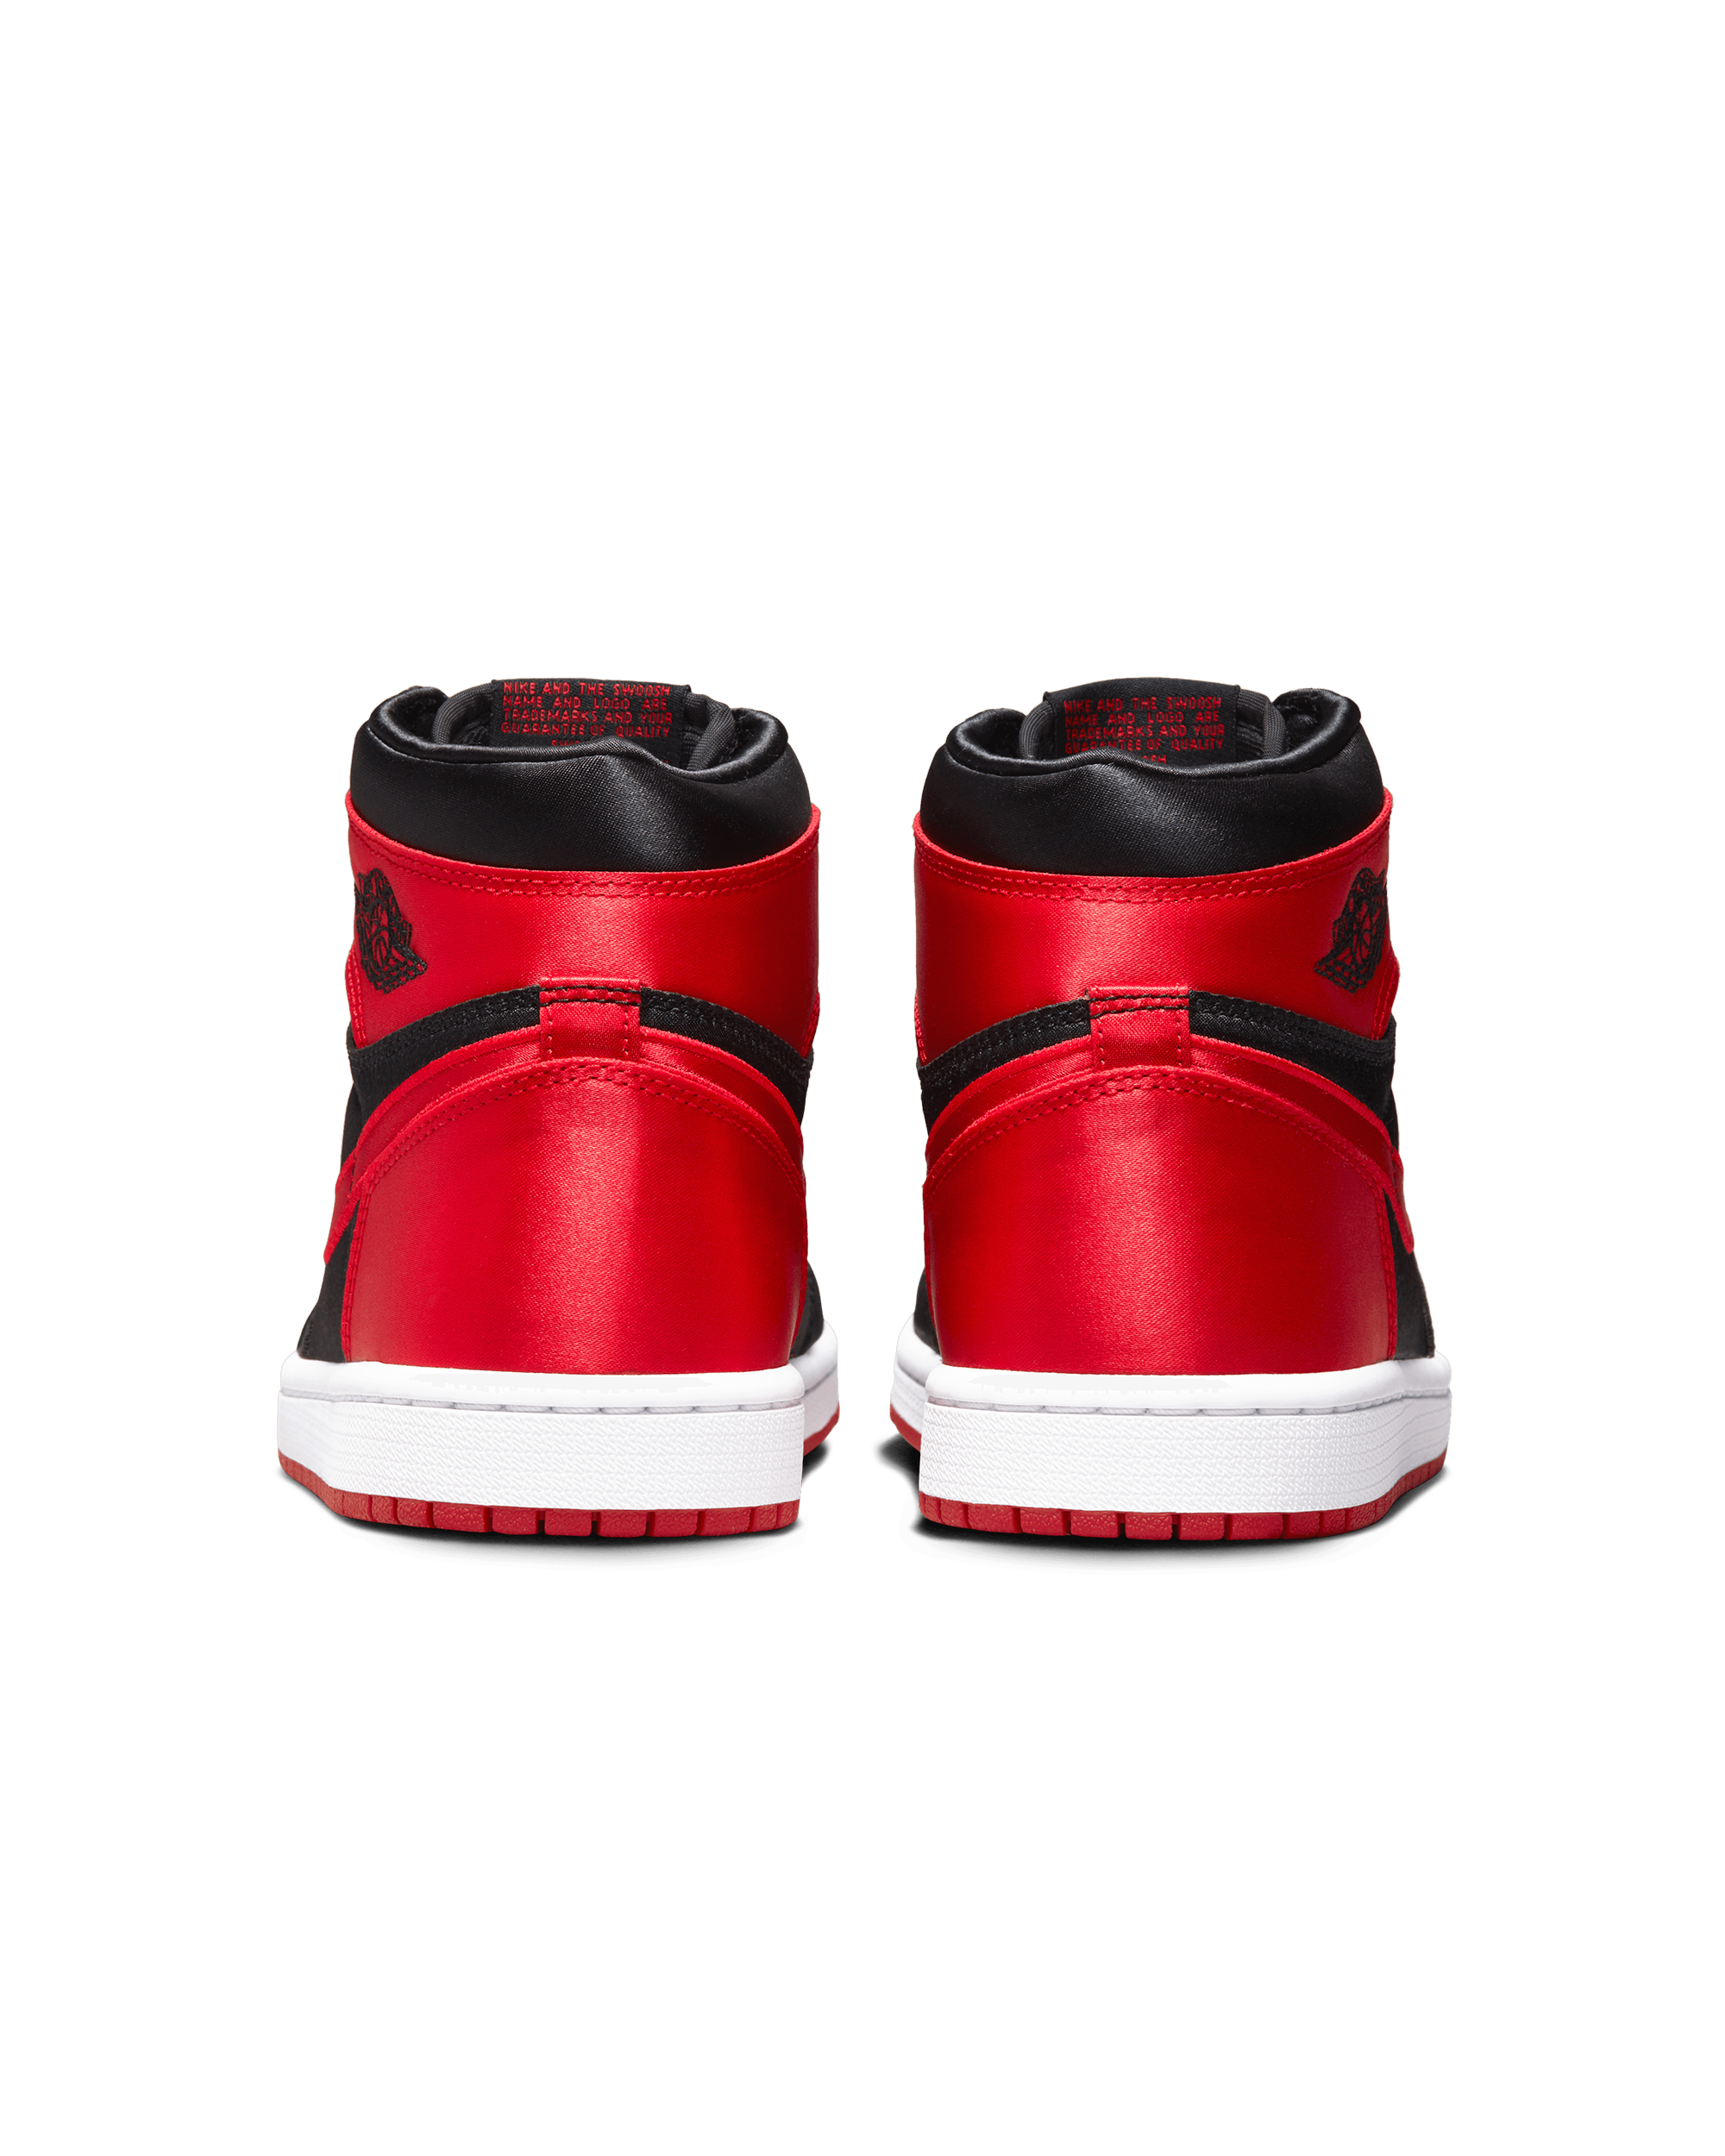 Womens Air Jordan 1 High OG "Satin Bred" - Black / University Red / White